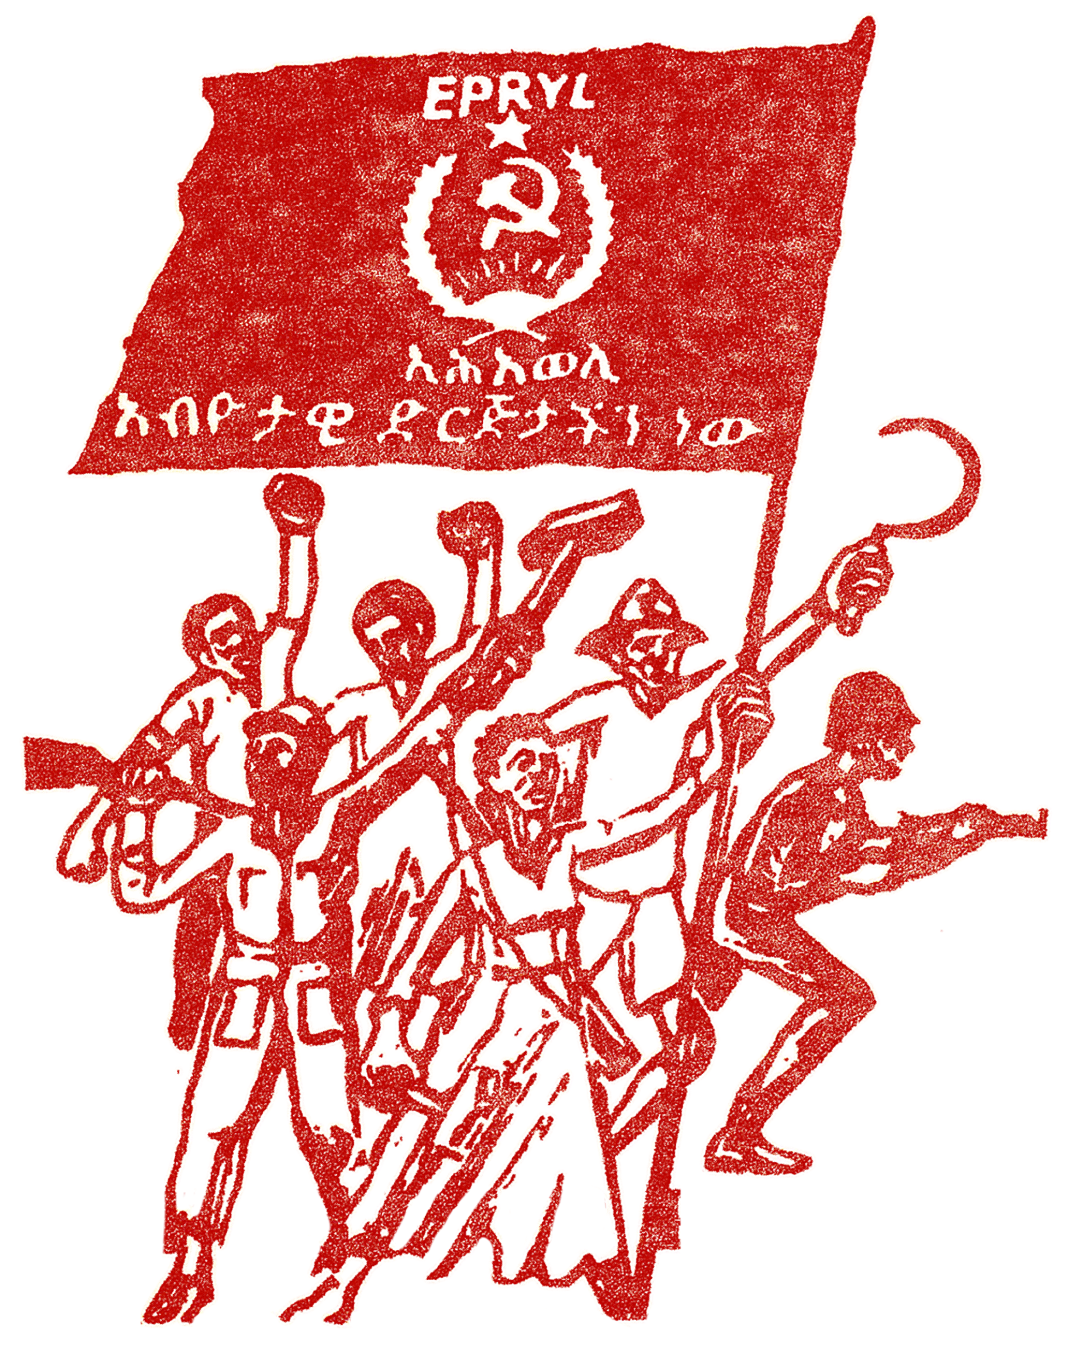 ”EPRP är vårt parti! EPRYL är vår revolutionära organisation”, affisch från 1978.